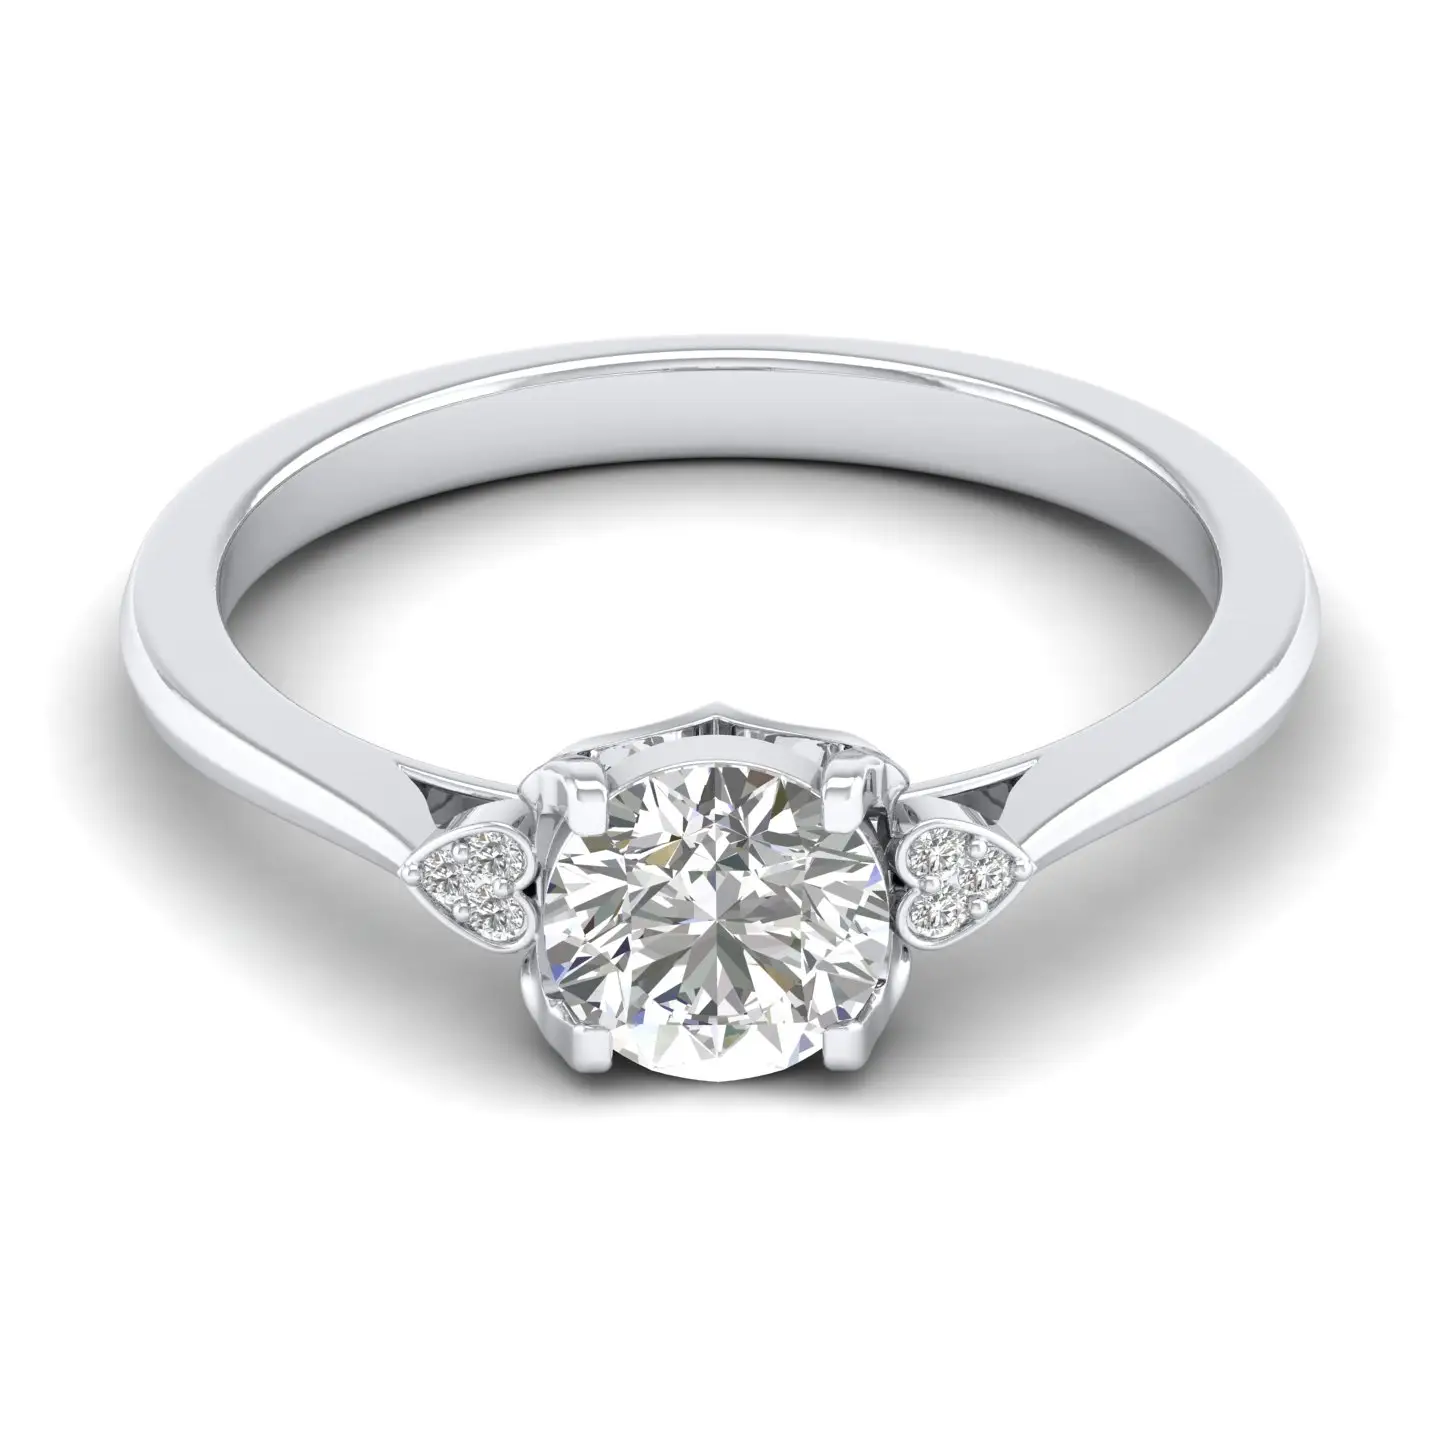 แหวนเพชรธรรมชาติแท้สำหรับผู้หญิงแหวนเพชรธรรมชาติแท้18K สีทองสีขาวทองแท้คุณภาพดี